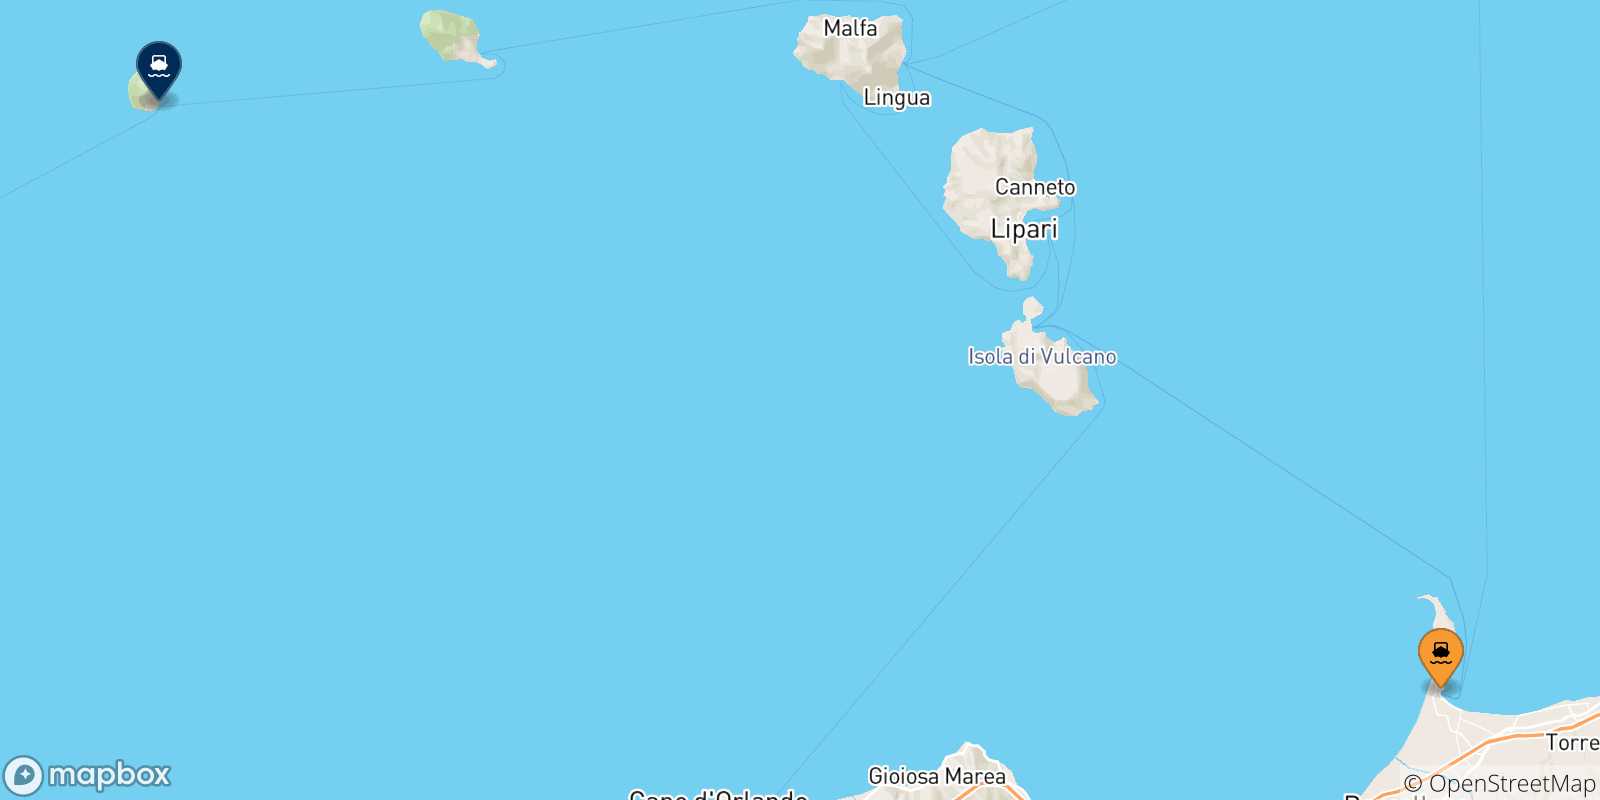 Mapa de las posibles rutas entre Sicilia y  Alicudi